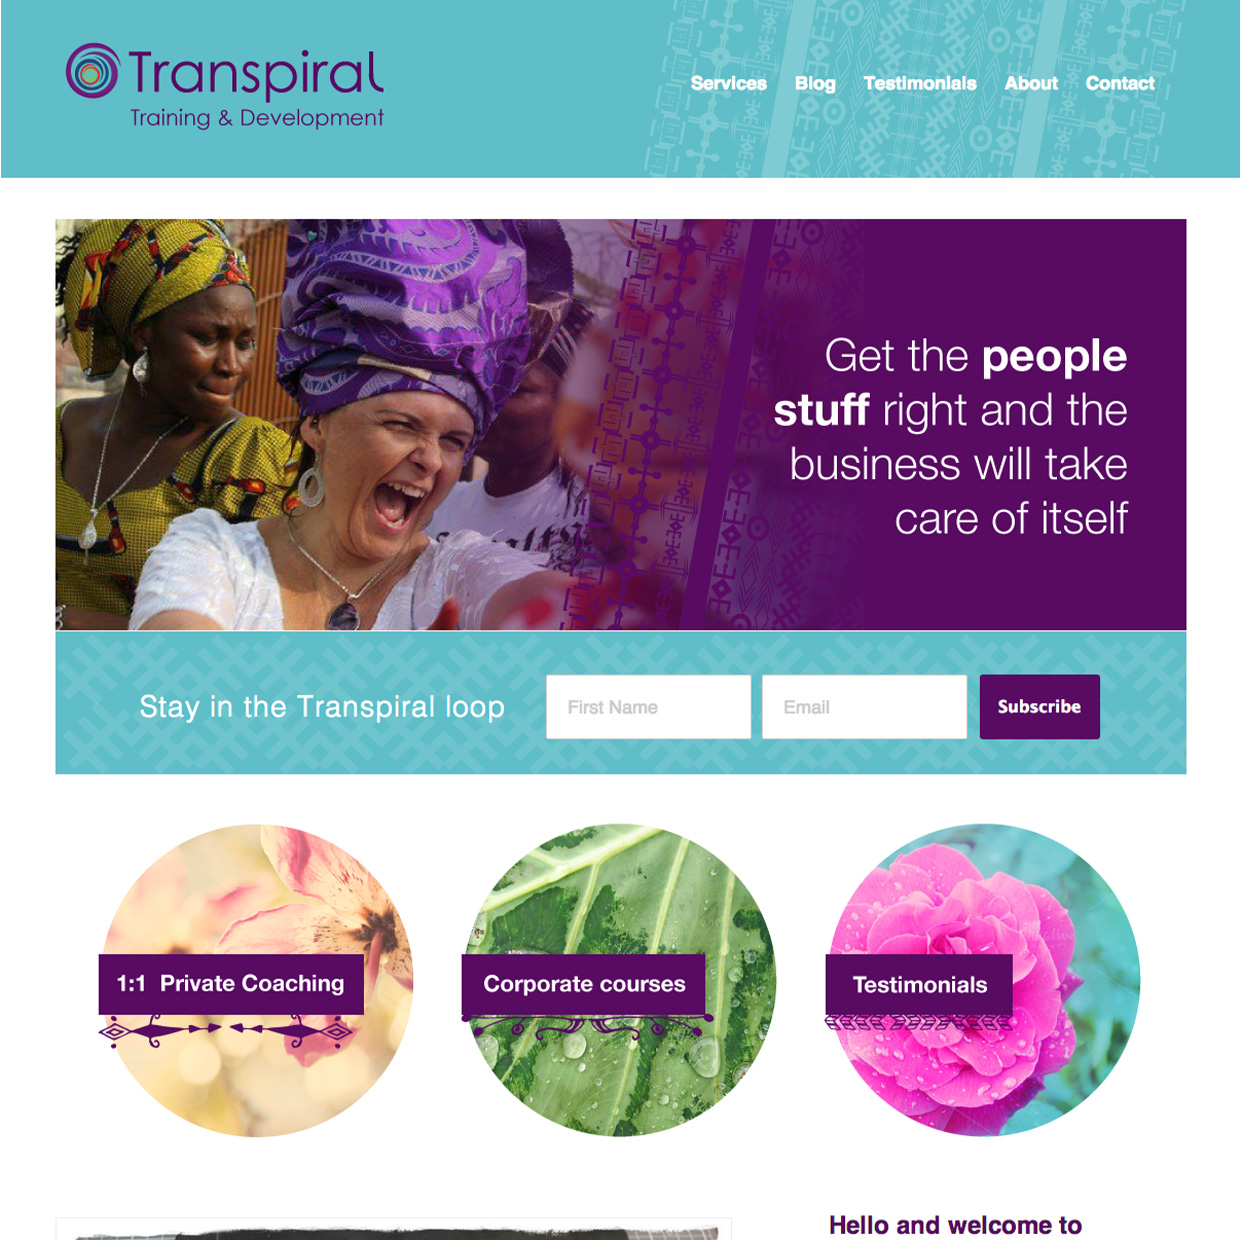 Transpiral website design by Frances Verbeek